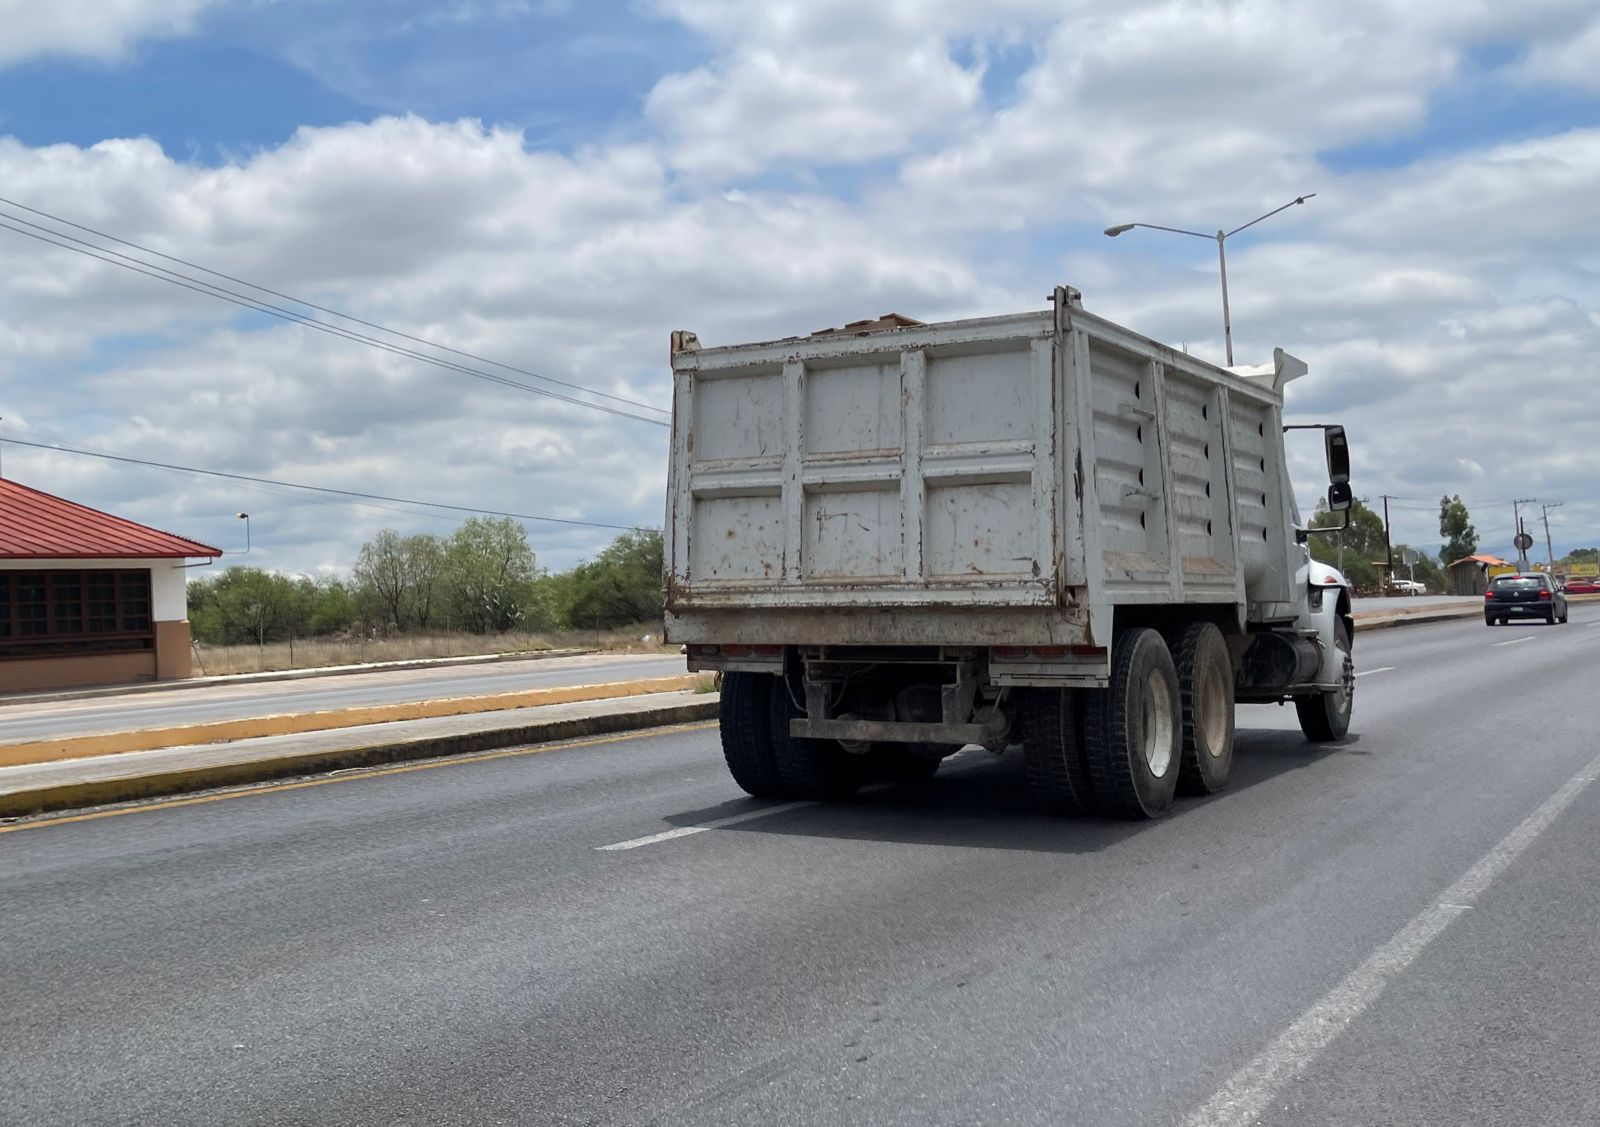  Encuentran despensas dentro de camión en inmueble de Ayuntamiento de Mexquitic de Carmona